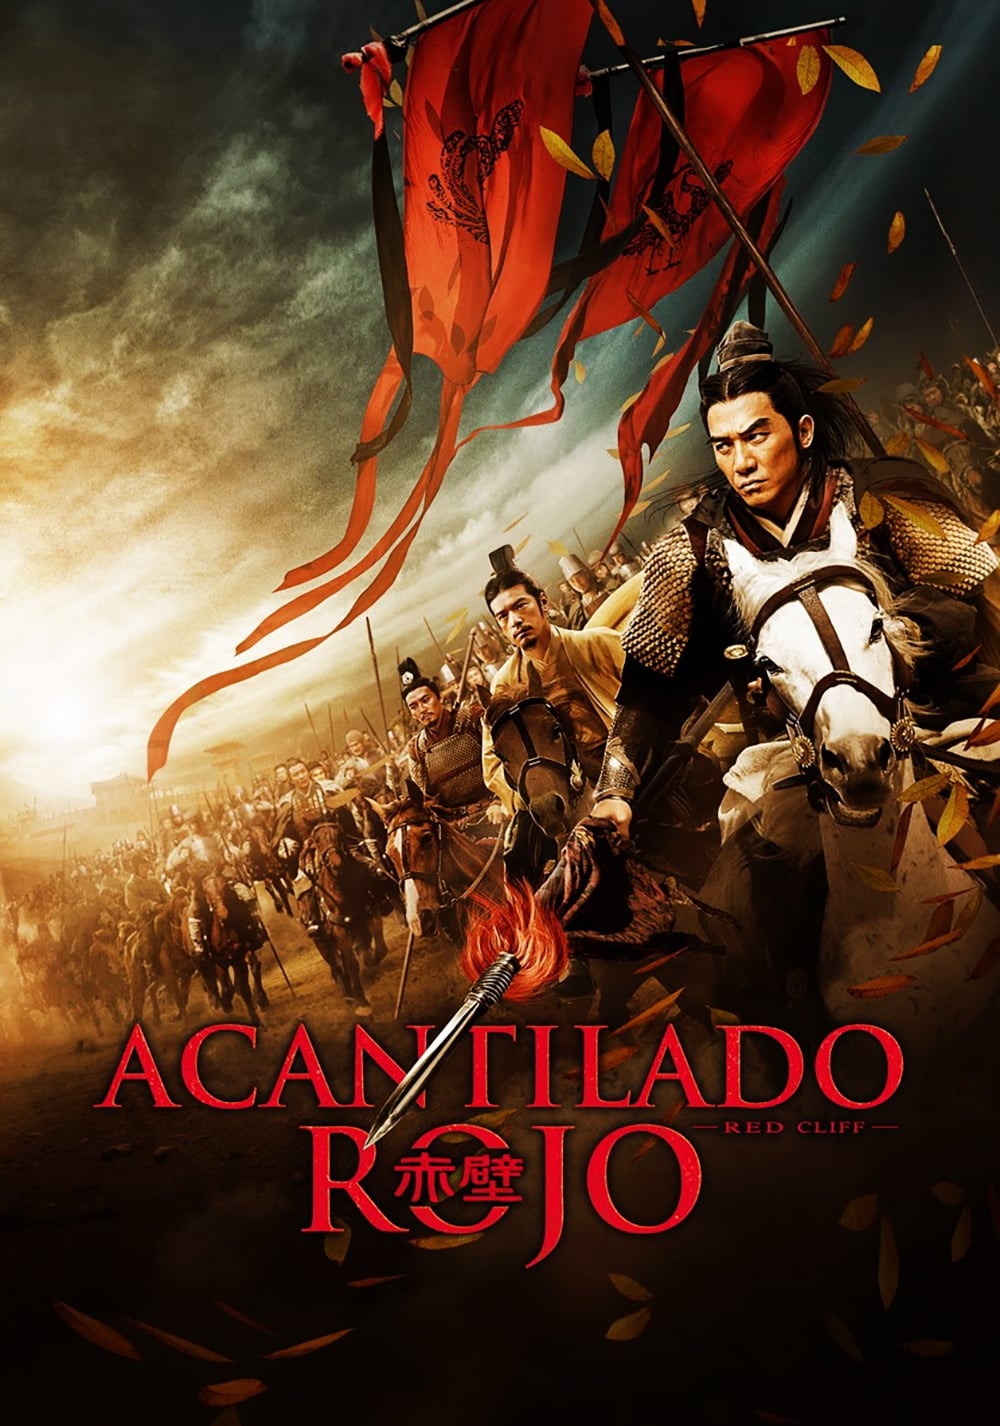 Acantilado rojo poster